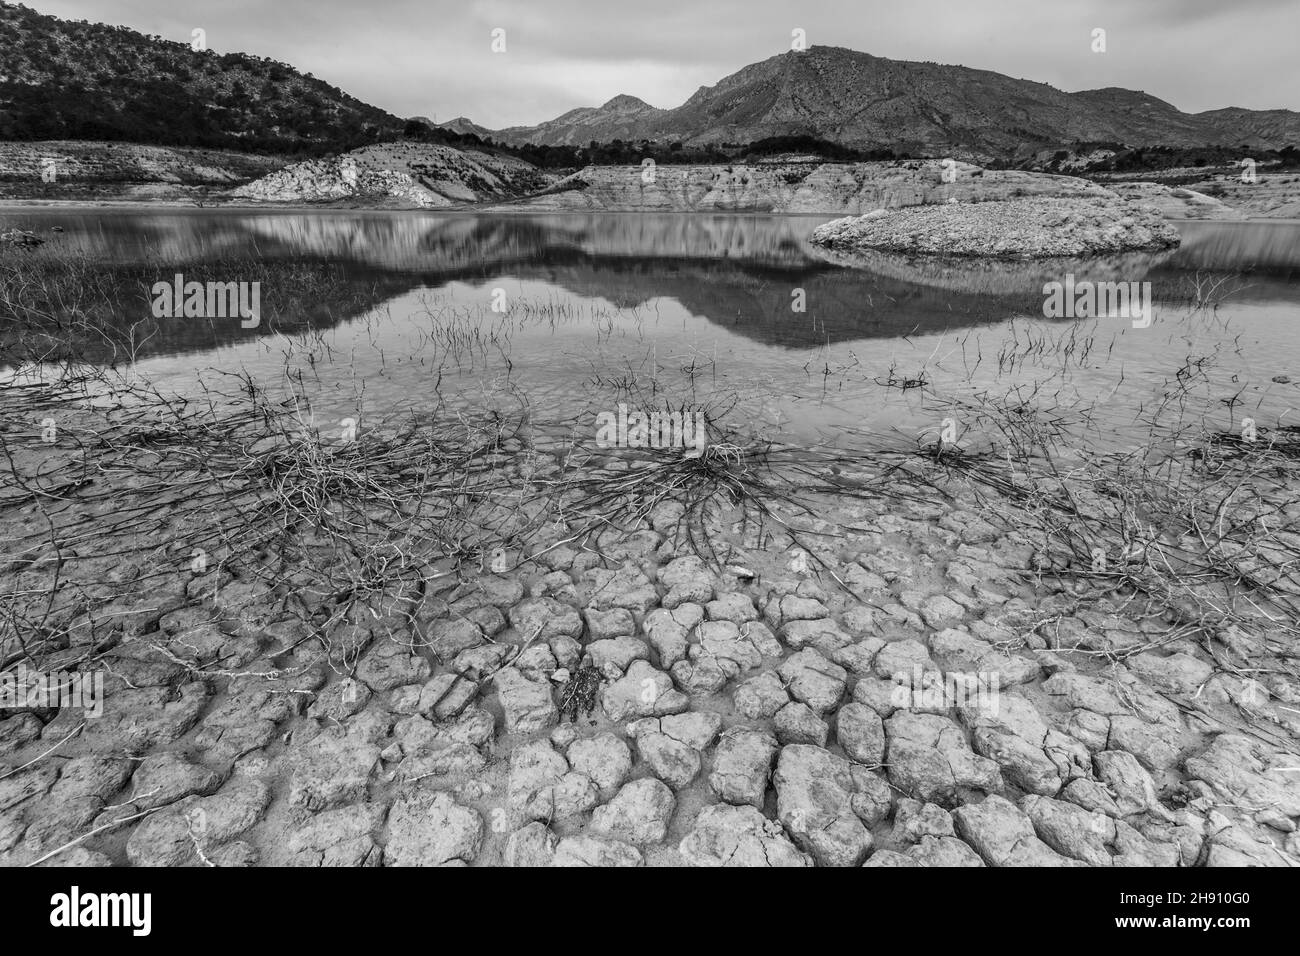 Photo en niveaux de gris d'un petit lac dans une zone aride sèche Banque D'Images